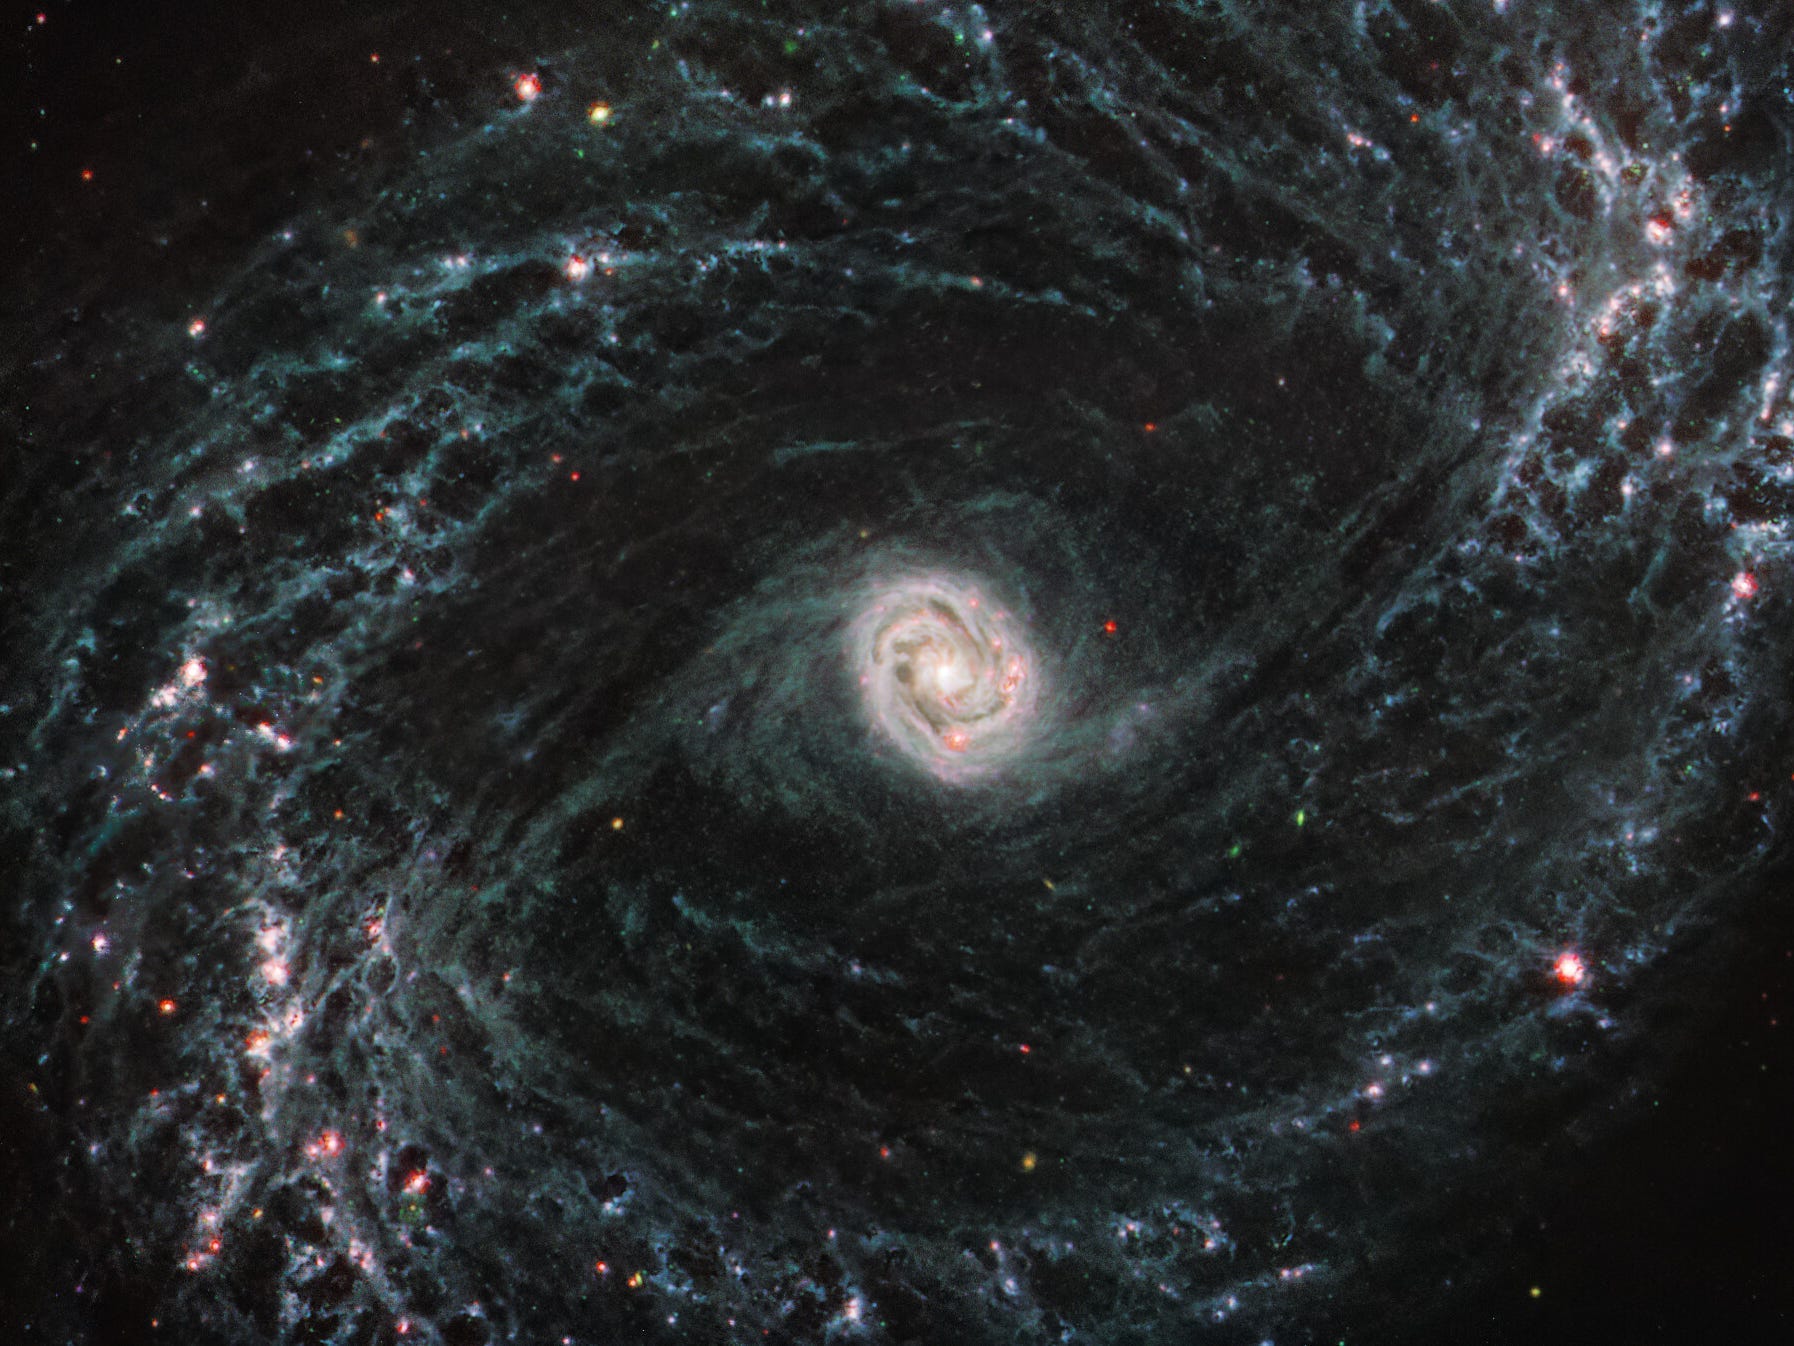 Die Bilder des Webb-Teleskops von NGC 1433, NGC 7496 und NGC 1365 zeigen die Gas- und Staubnetzwerke der Galaxien in außerordentlicher Detailtreue.  Diese Daten sind Teil einer laufenden Webb-Durchmusterung von 19 Spiralgalaxien.